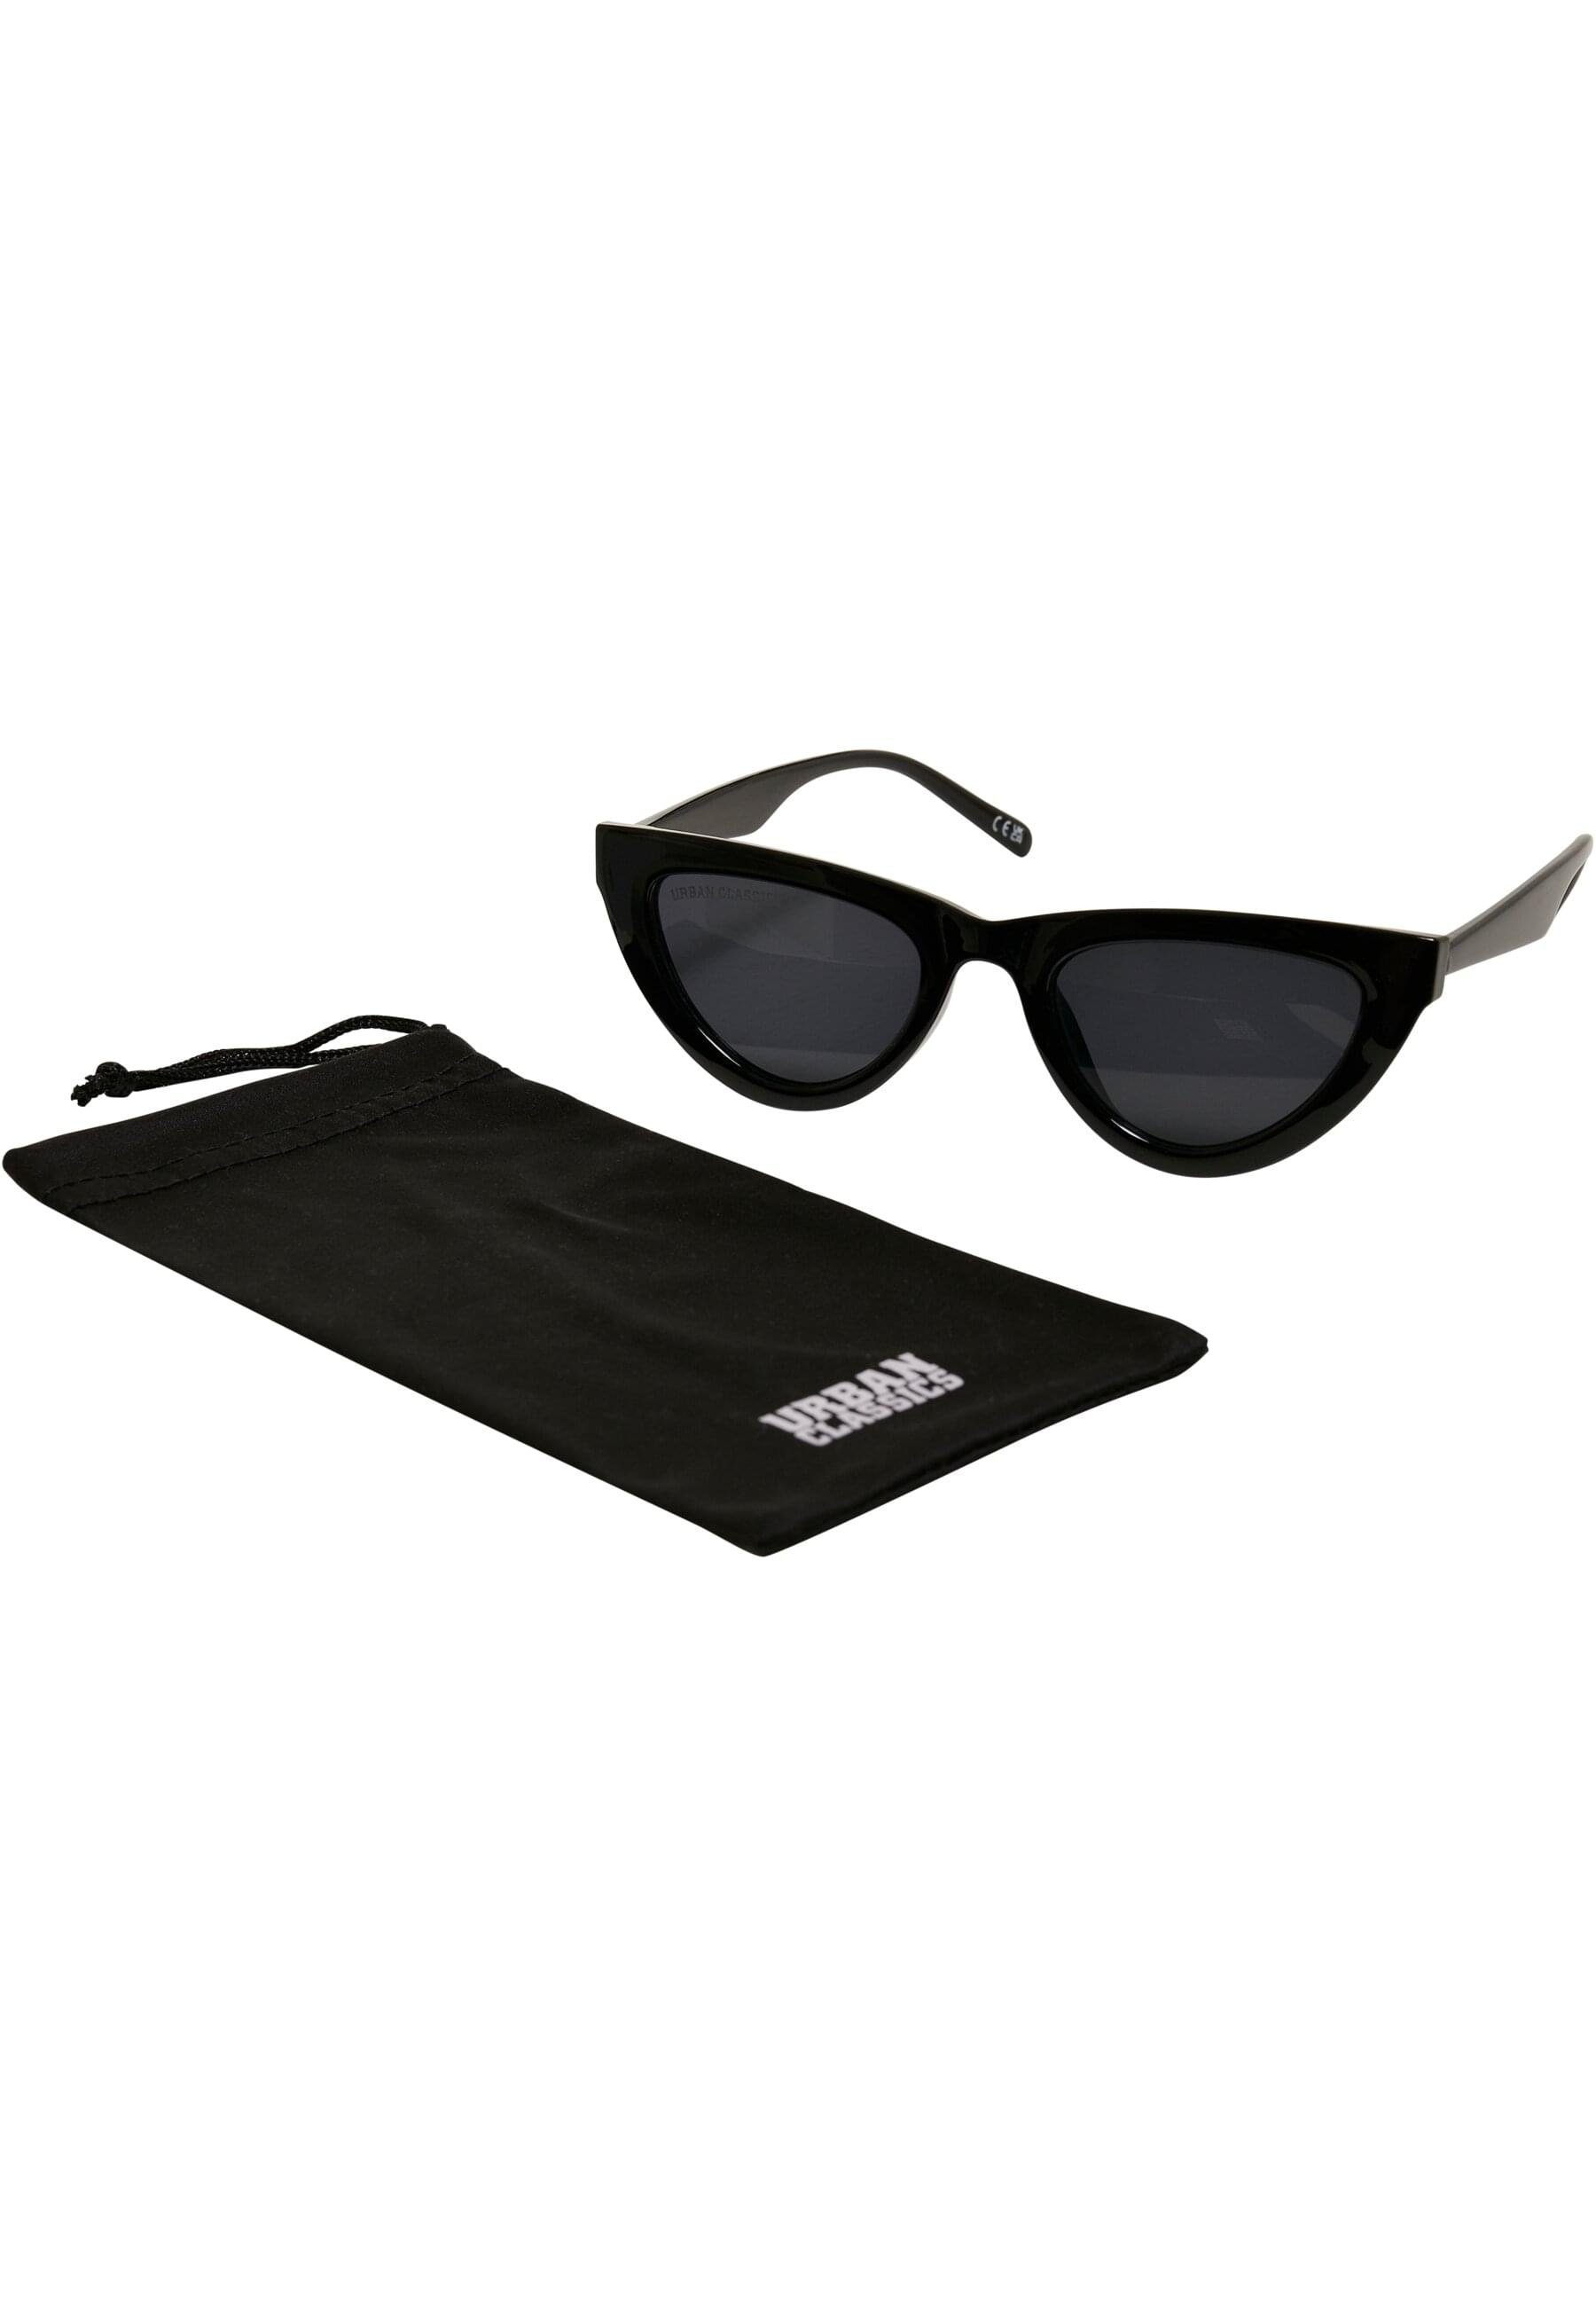 URBAN CLASSICS Sonnenbrille Unisex Arica Sunglasses